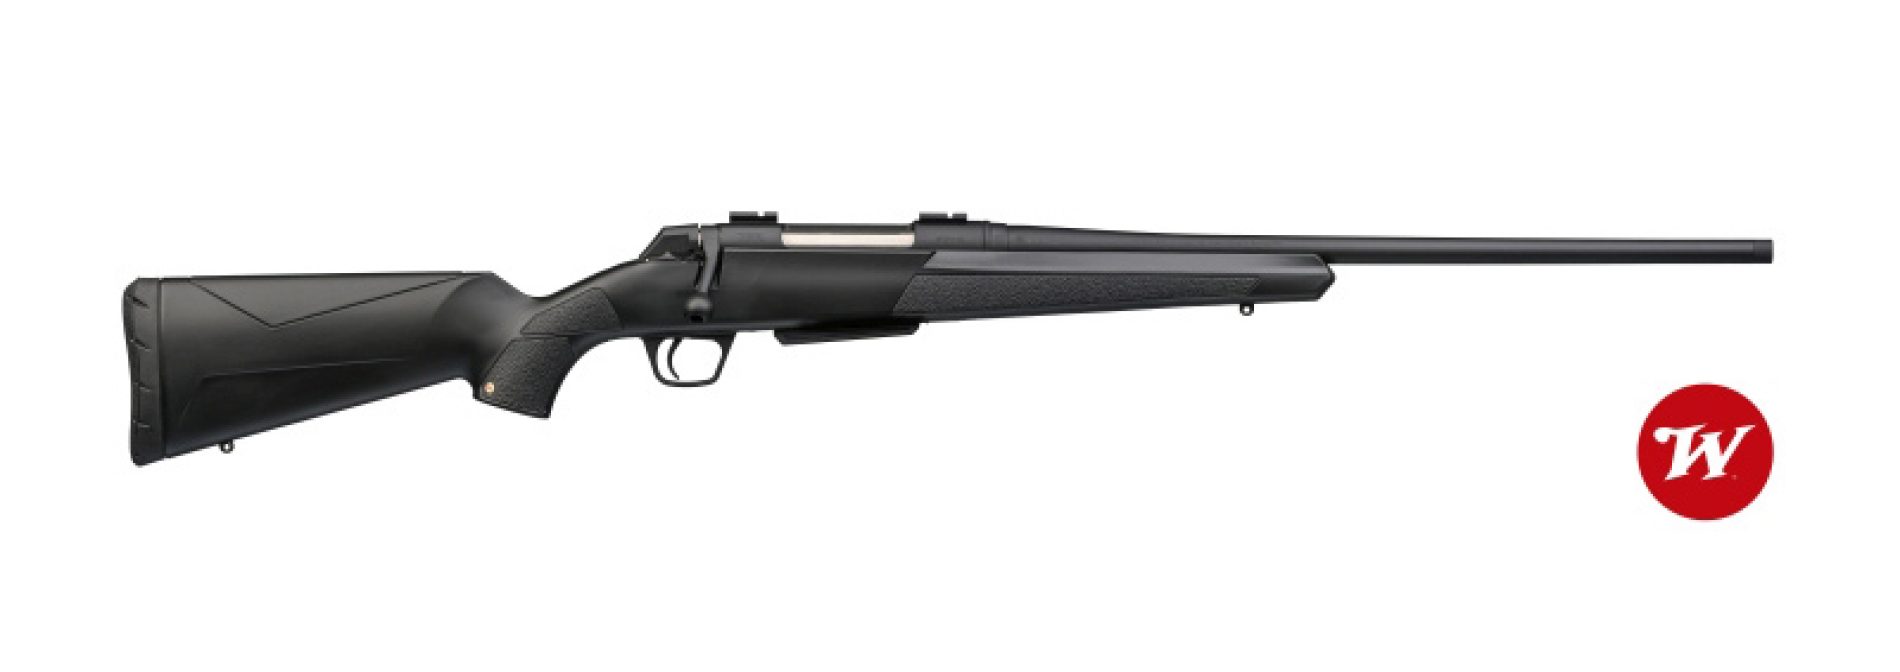 Rifle Winchester XPR Composite, extremadamente preciso